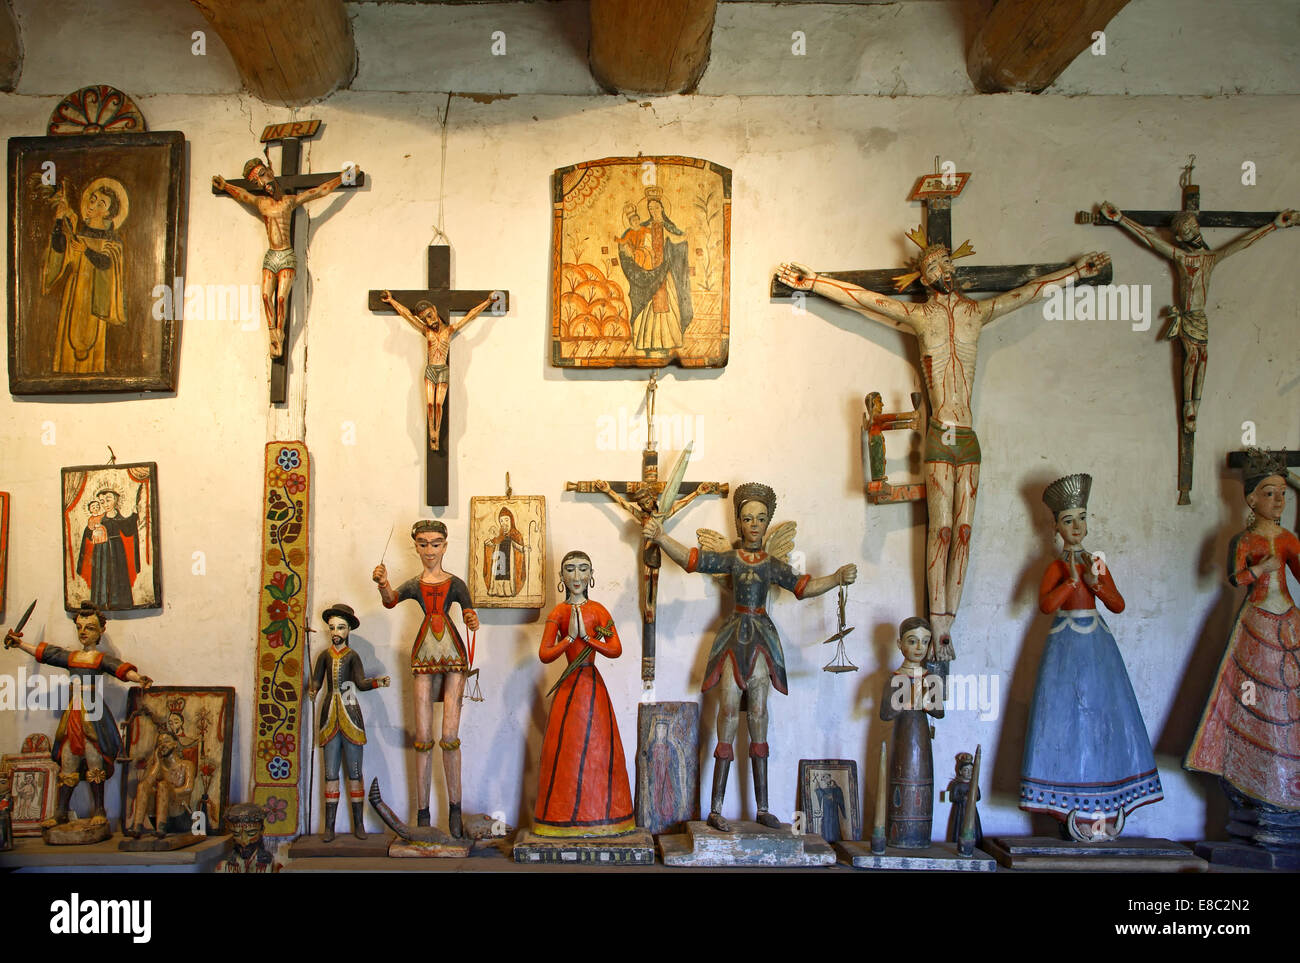 Wooden santos, Frank residence, Rio Hondo, New Mexico USA Stock Photo